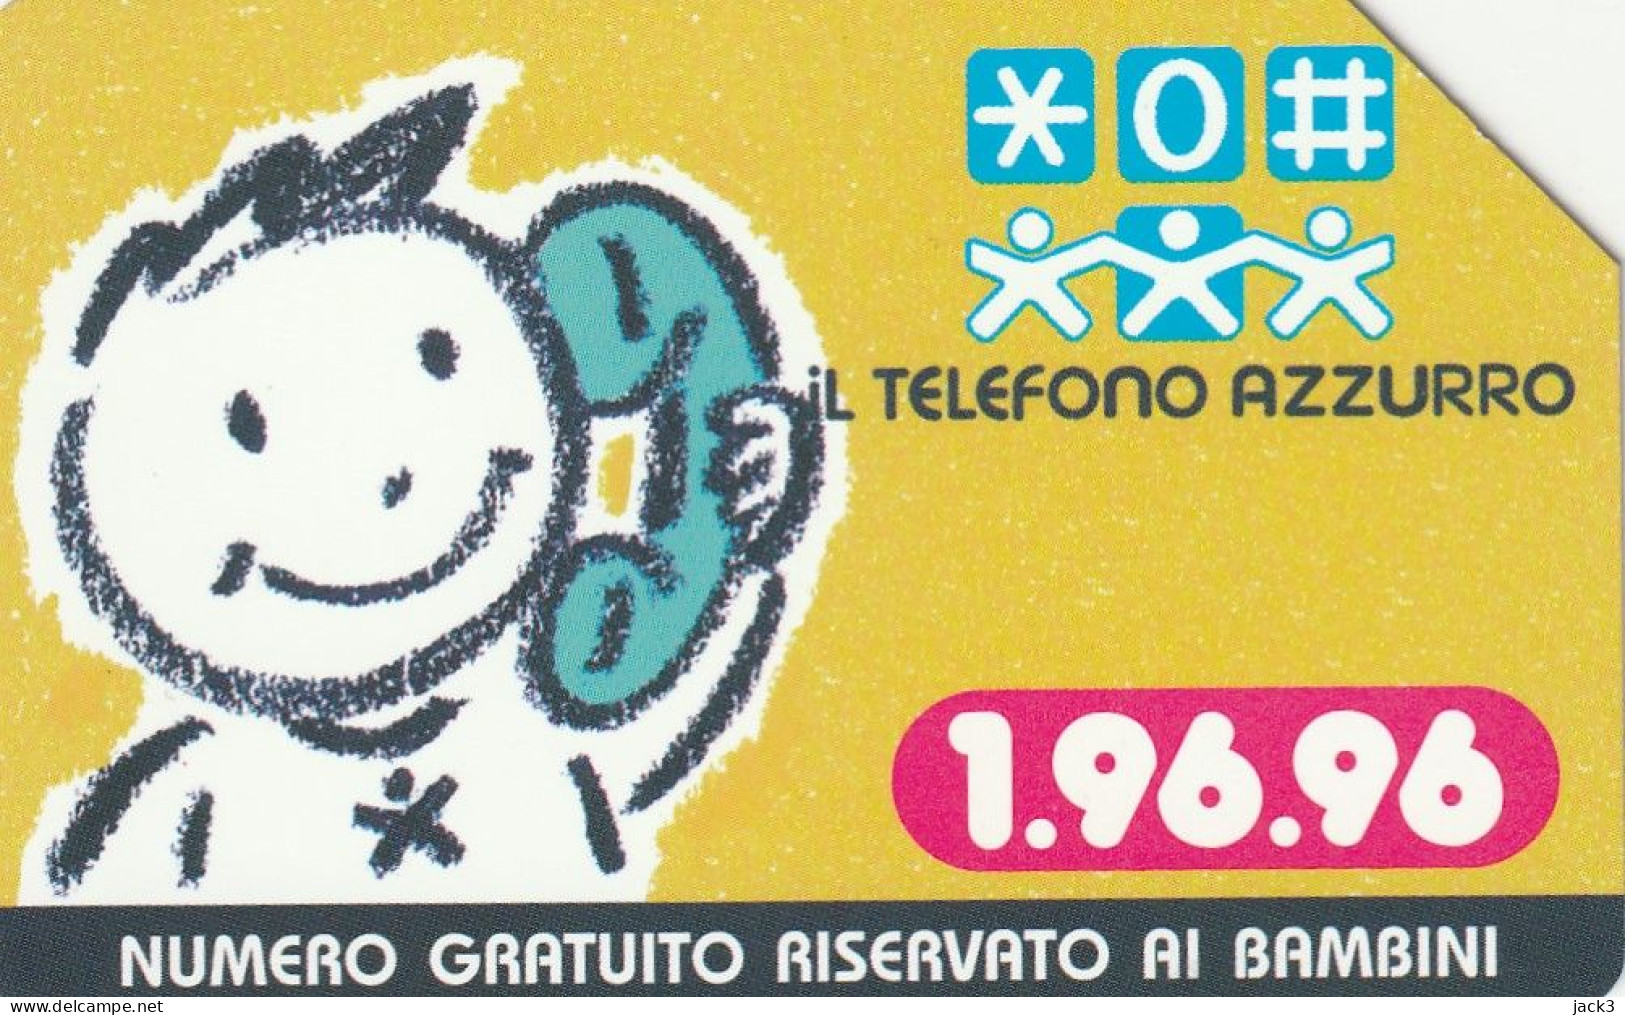 SCEDA TELEFONICA - TELEFONO AZZURRO (2 SCANS) - Public Themes